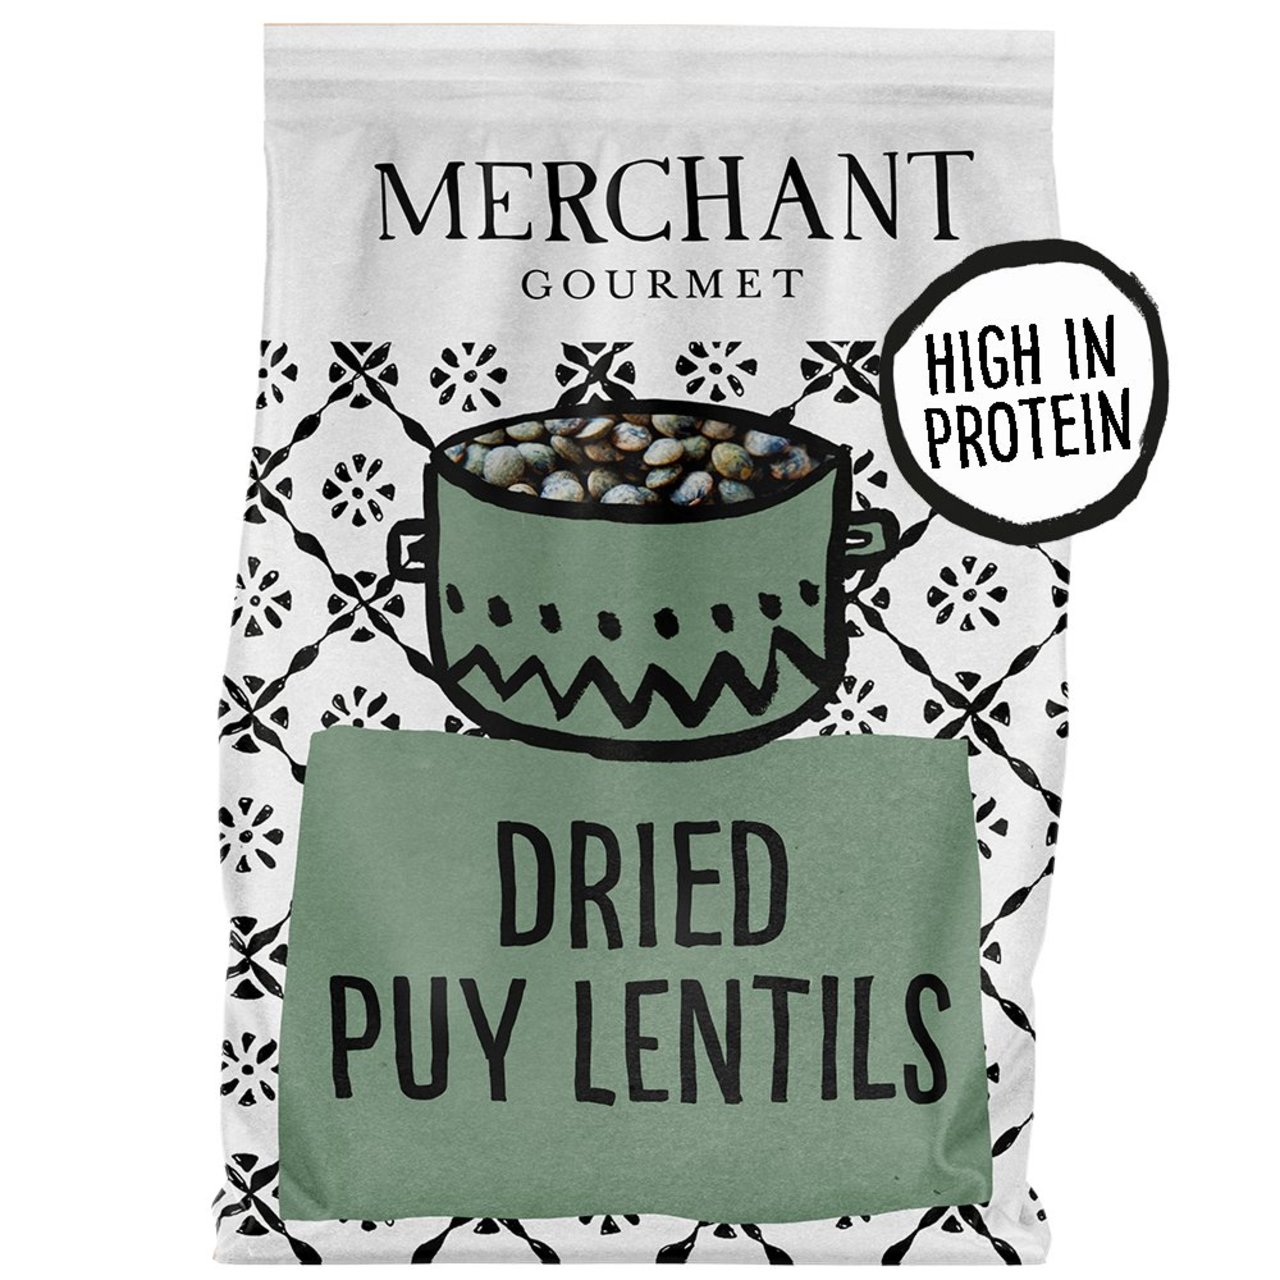 Merchant Gourmet Dried Puy Lentils